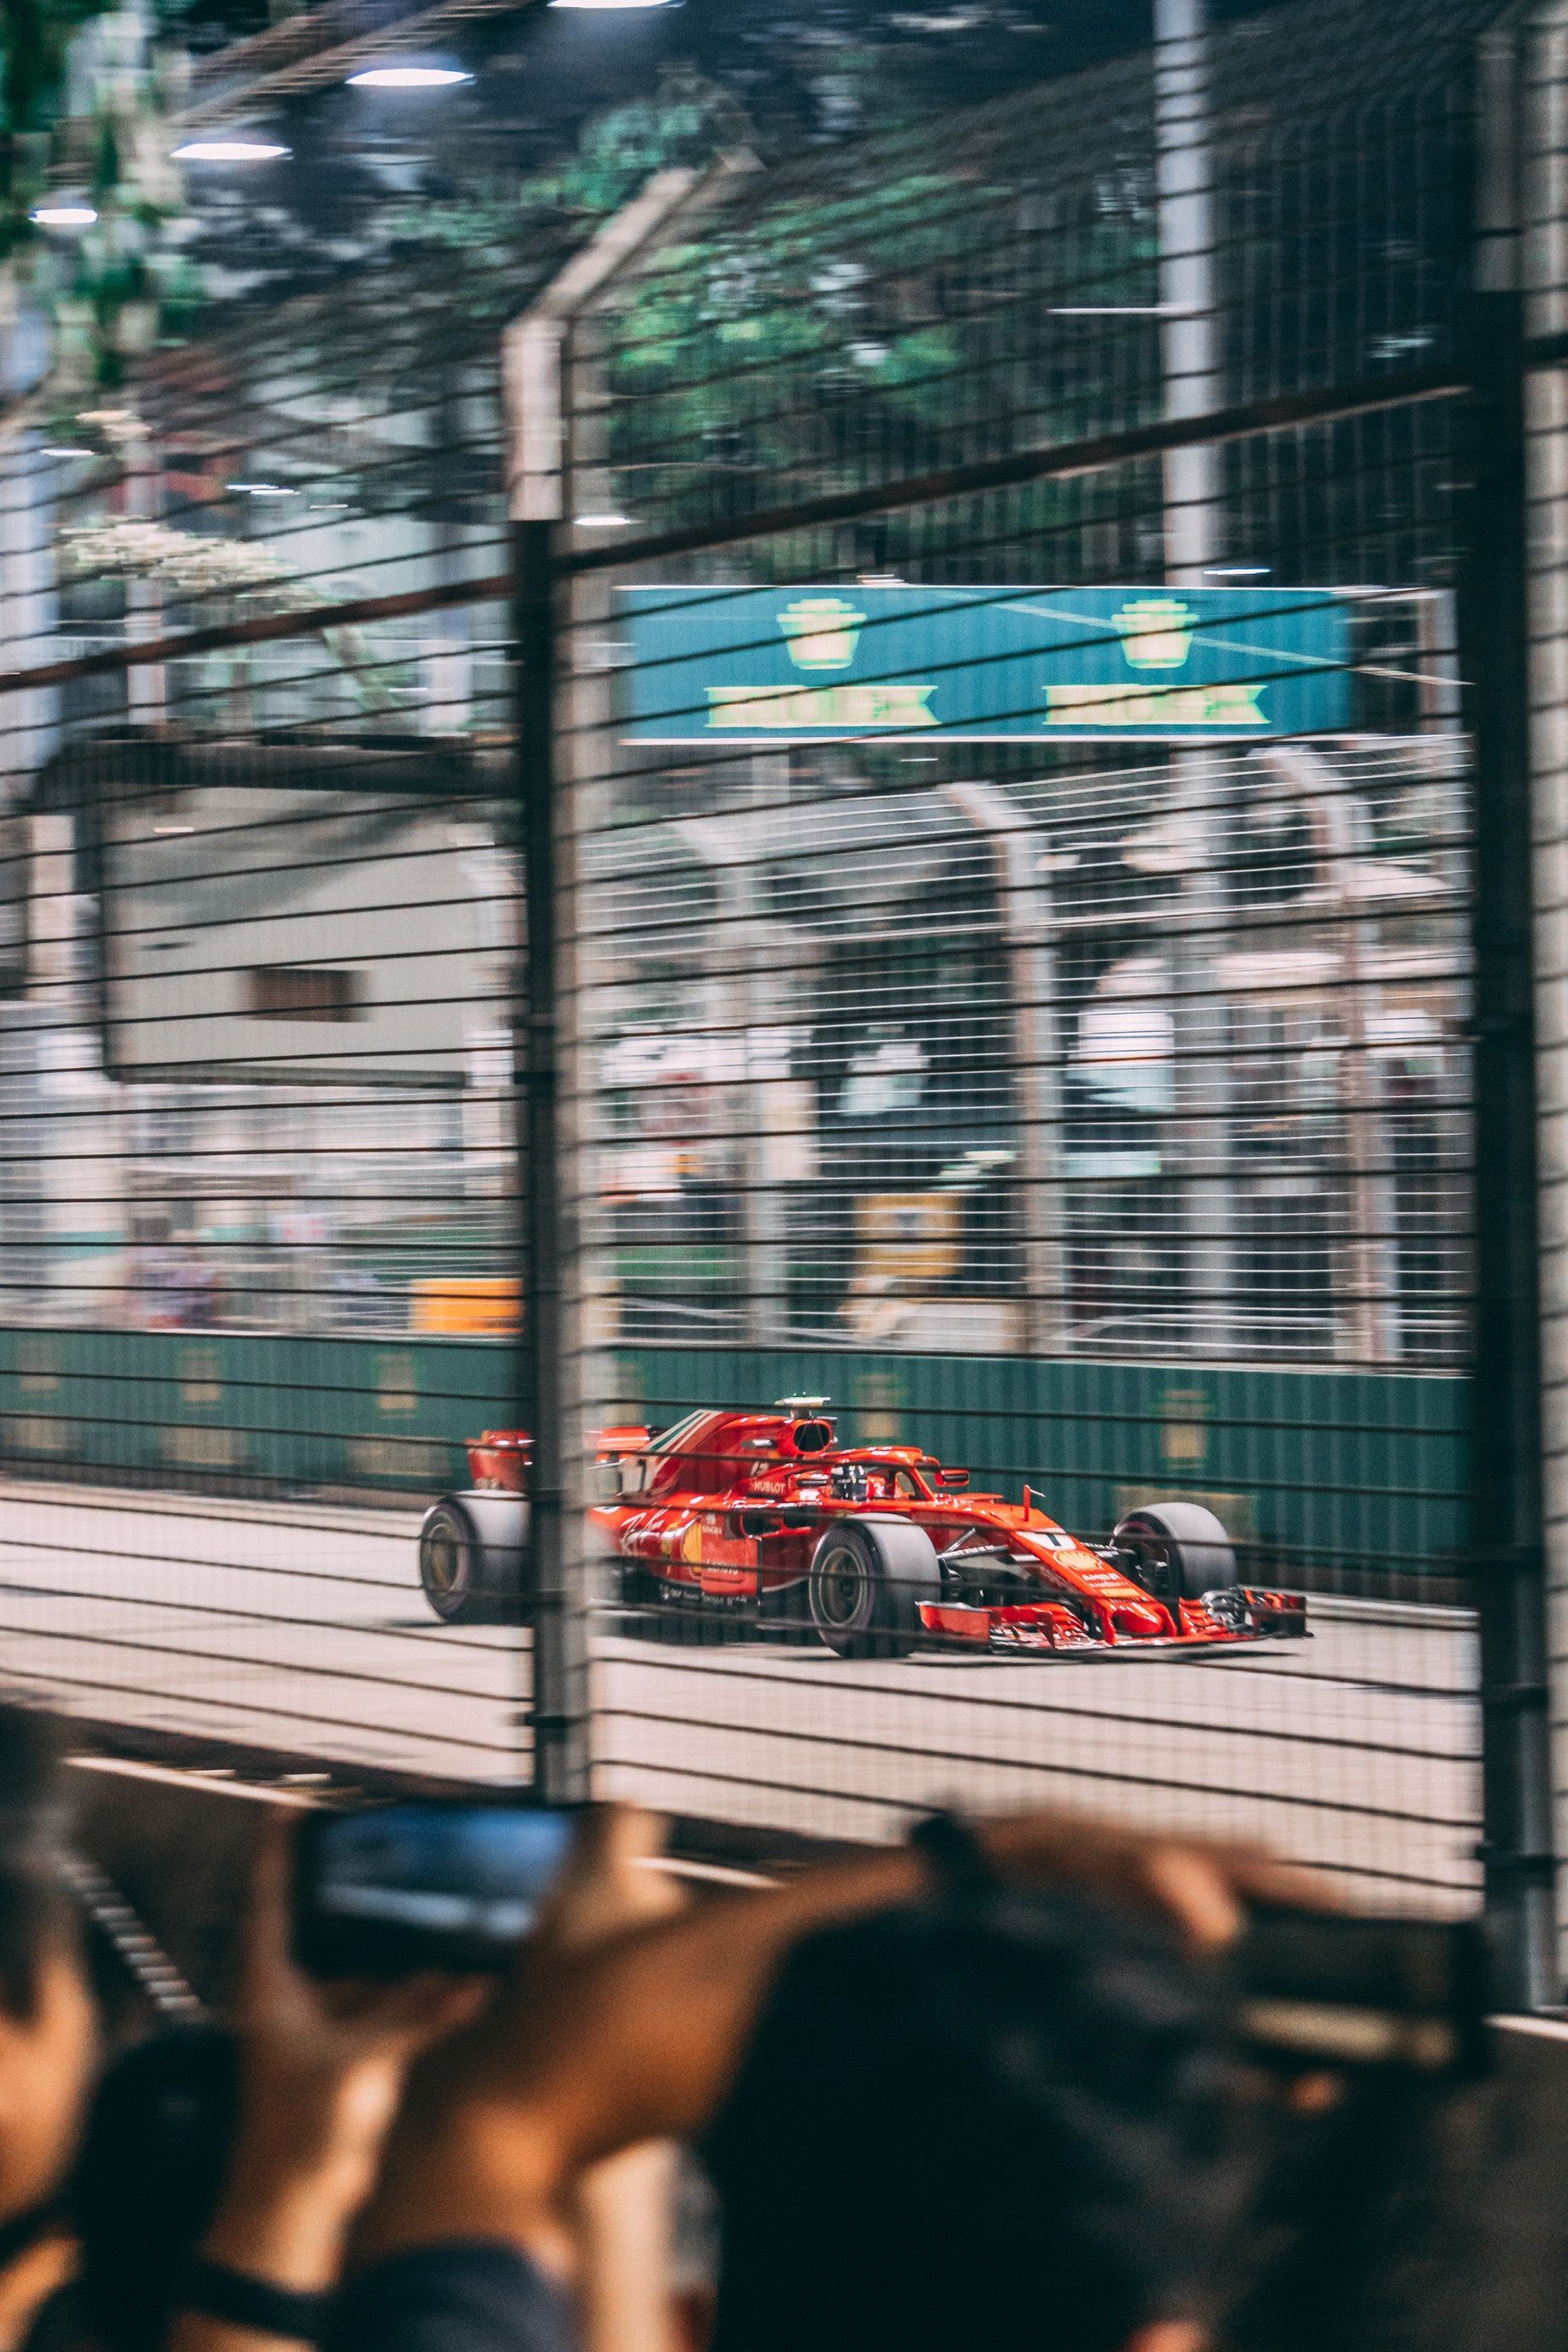  Kimi Räikkönen Hintergrundbild 1834x2751. The Ice Man Räikkönen F1 Singapore Grand Prix. Carros de corrida, Fotos de carros esportivos, Corrida de f1